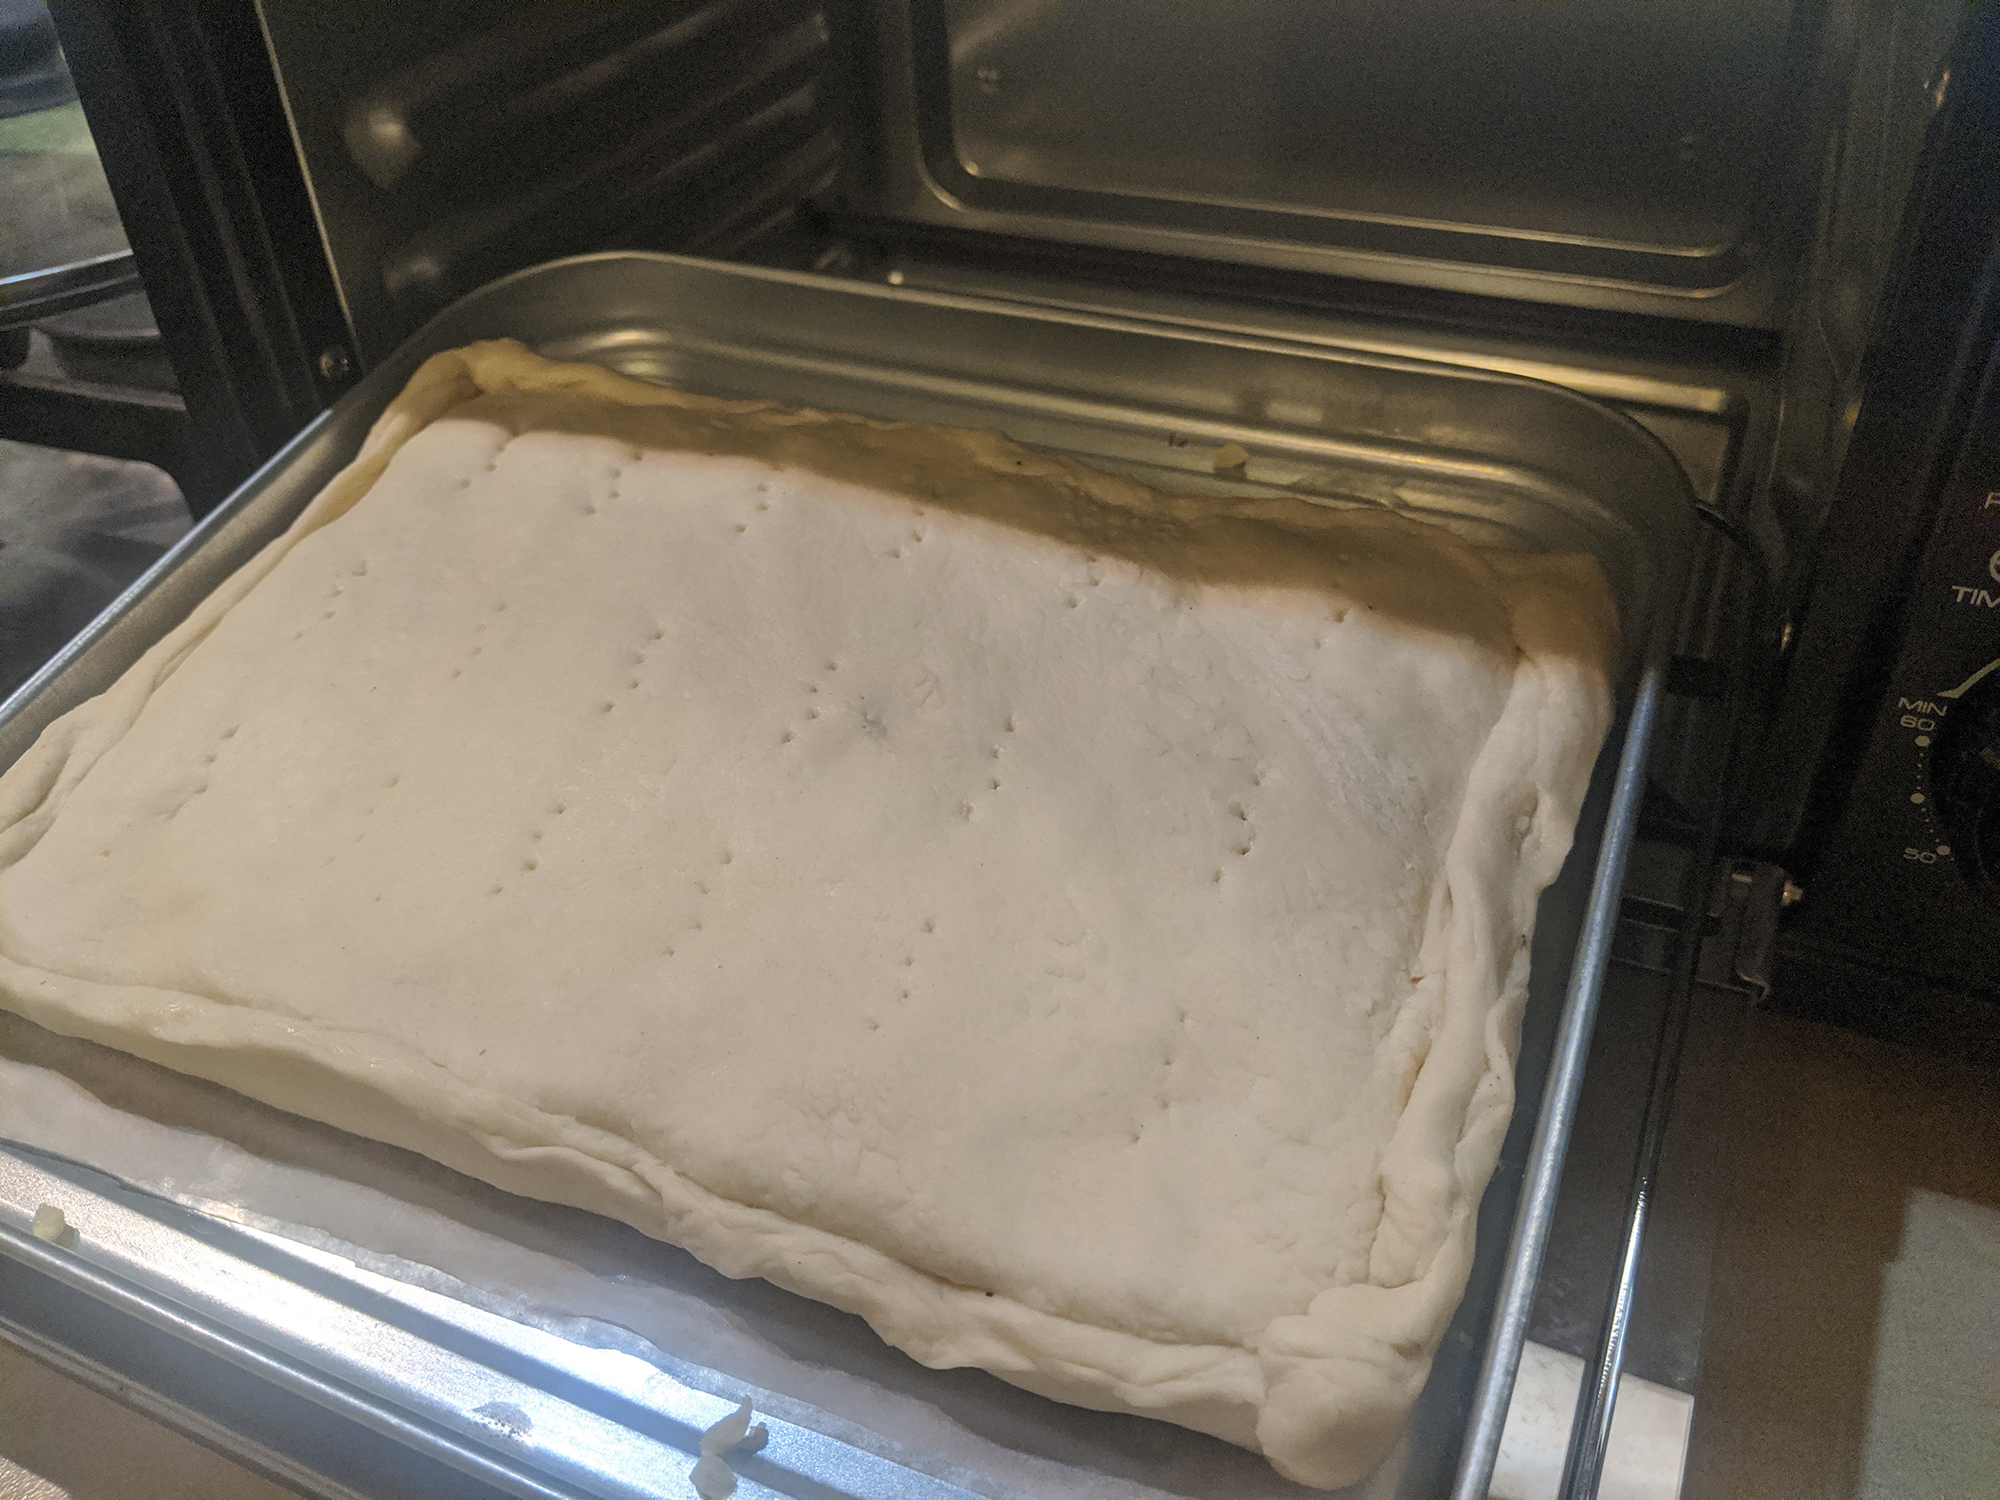 Gemlux gl-or-810. Разогрев замороженного пирога в духовом шкафу. Тесто 230 грам сколько размораживается. Что можно постелить на противень чтобы выпечь бутеры. Можно ли размораживать слоеное тесто в микроволновке